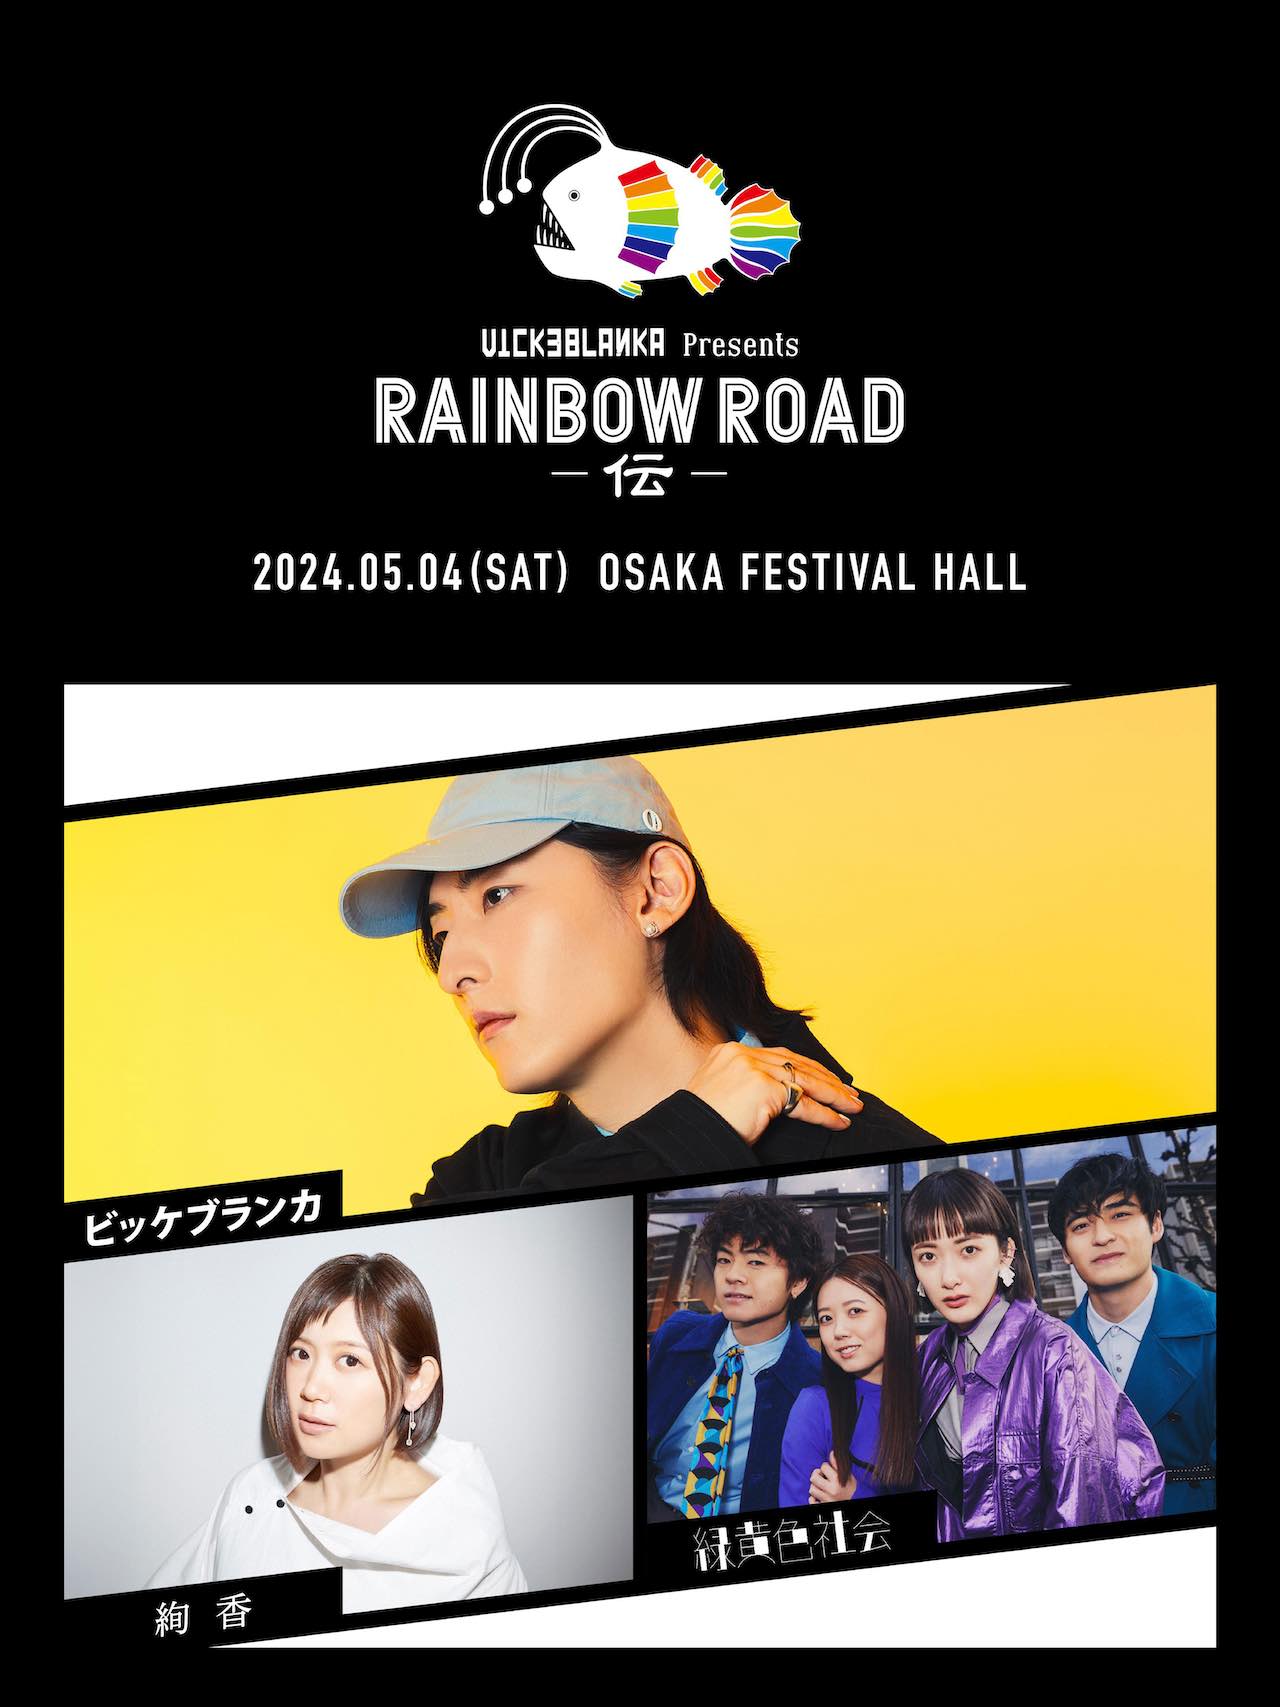 ビッケブランカ、初の大阪開催『RAINBOW ROAD -伝-』対バンアーティストは絢香・緑黄色社会に決定！